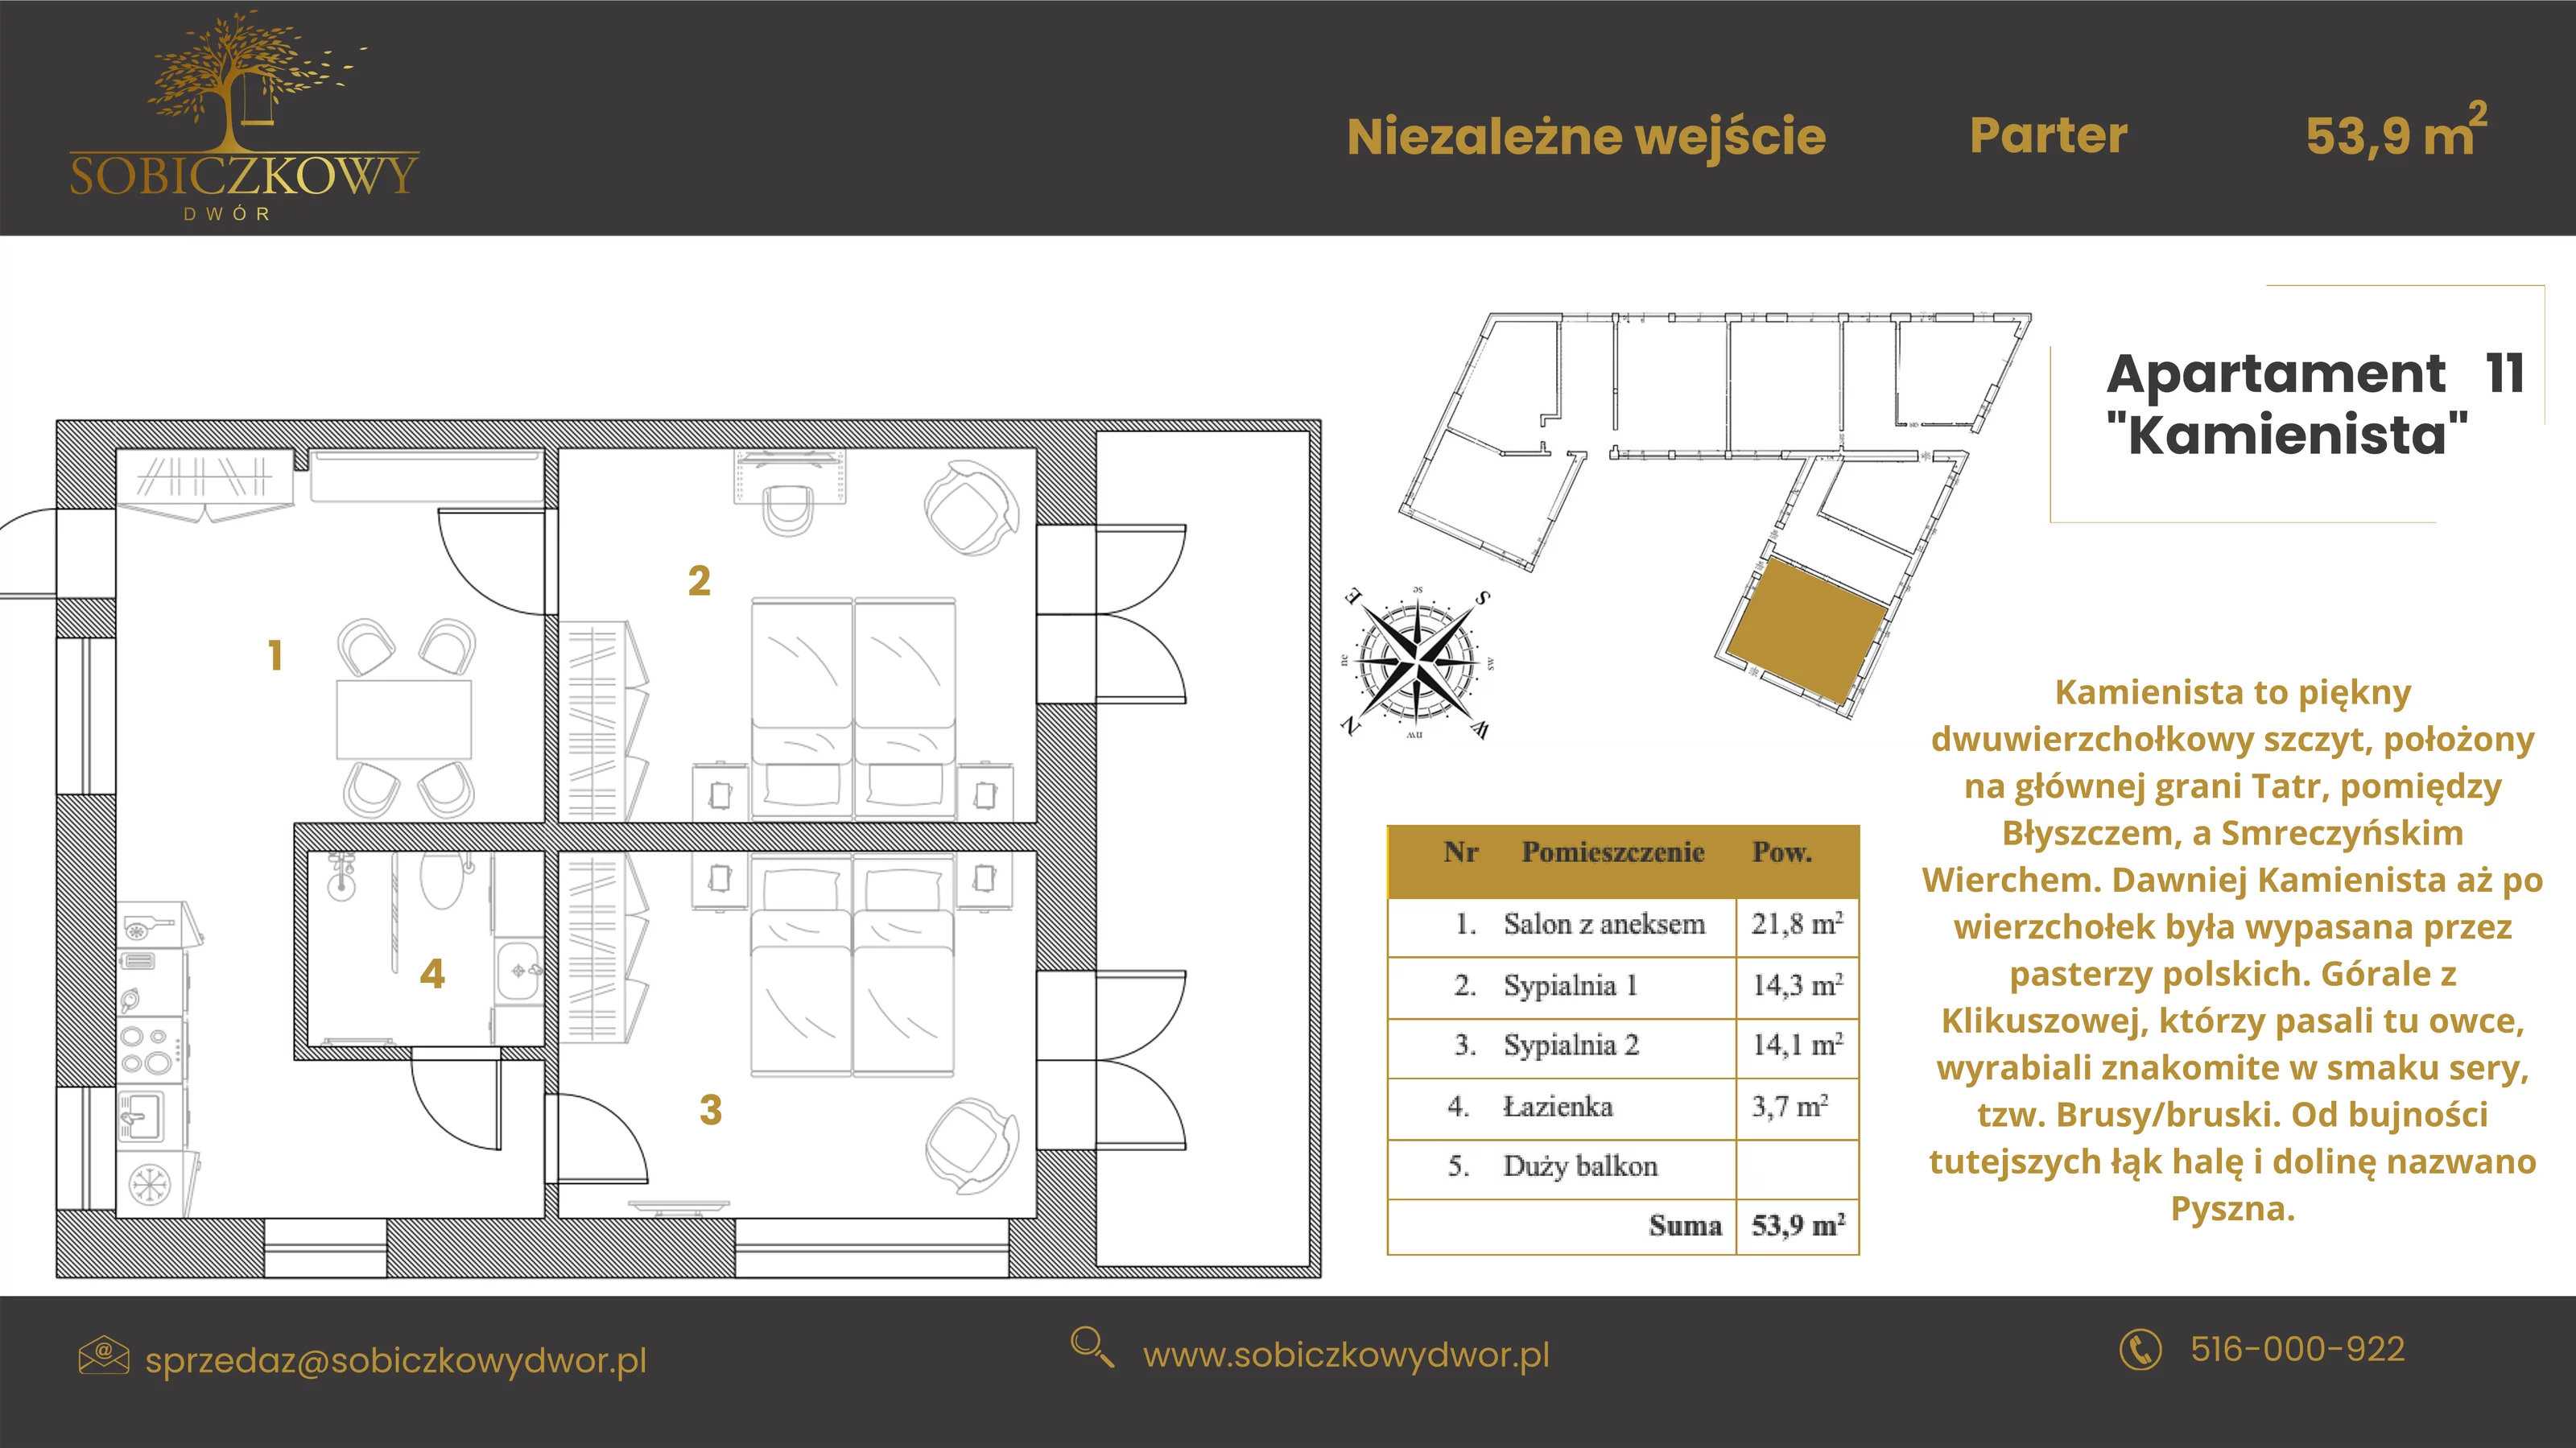 Apartament 53,90 m², parter, oferta nr 11 "Kamienista", Sobiczkowy Dwór, Kościelisko, ul. Sobiczkowa Bór 1